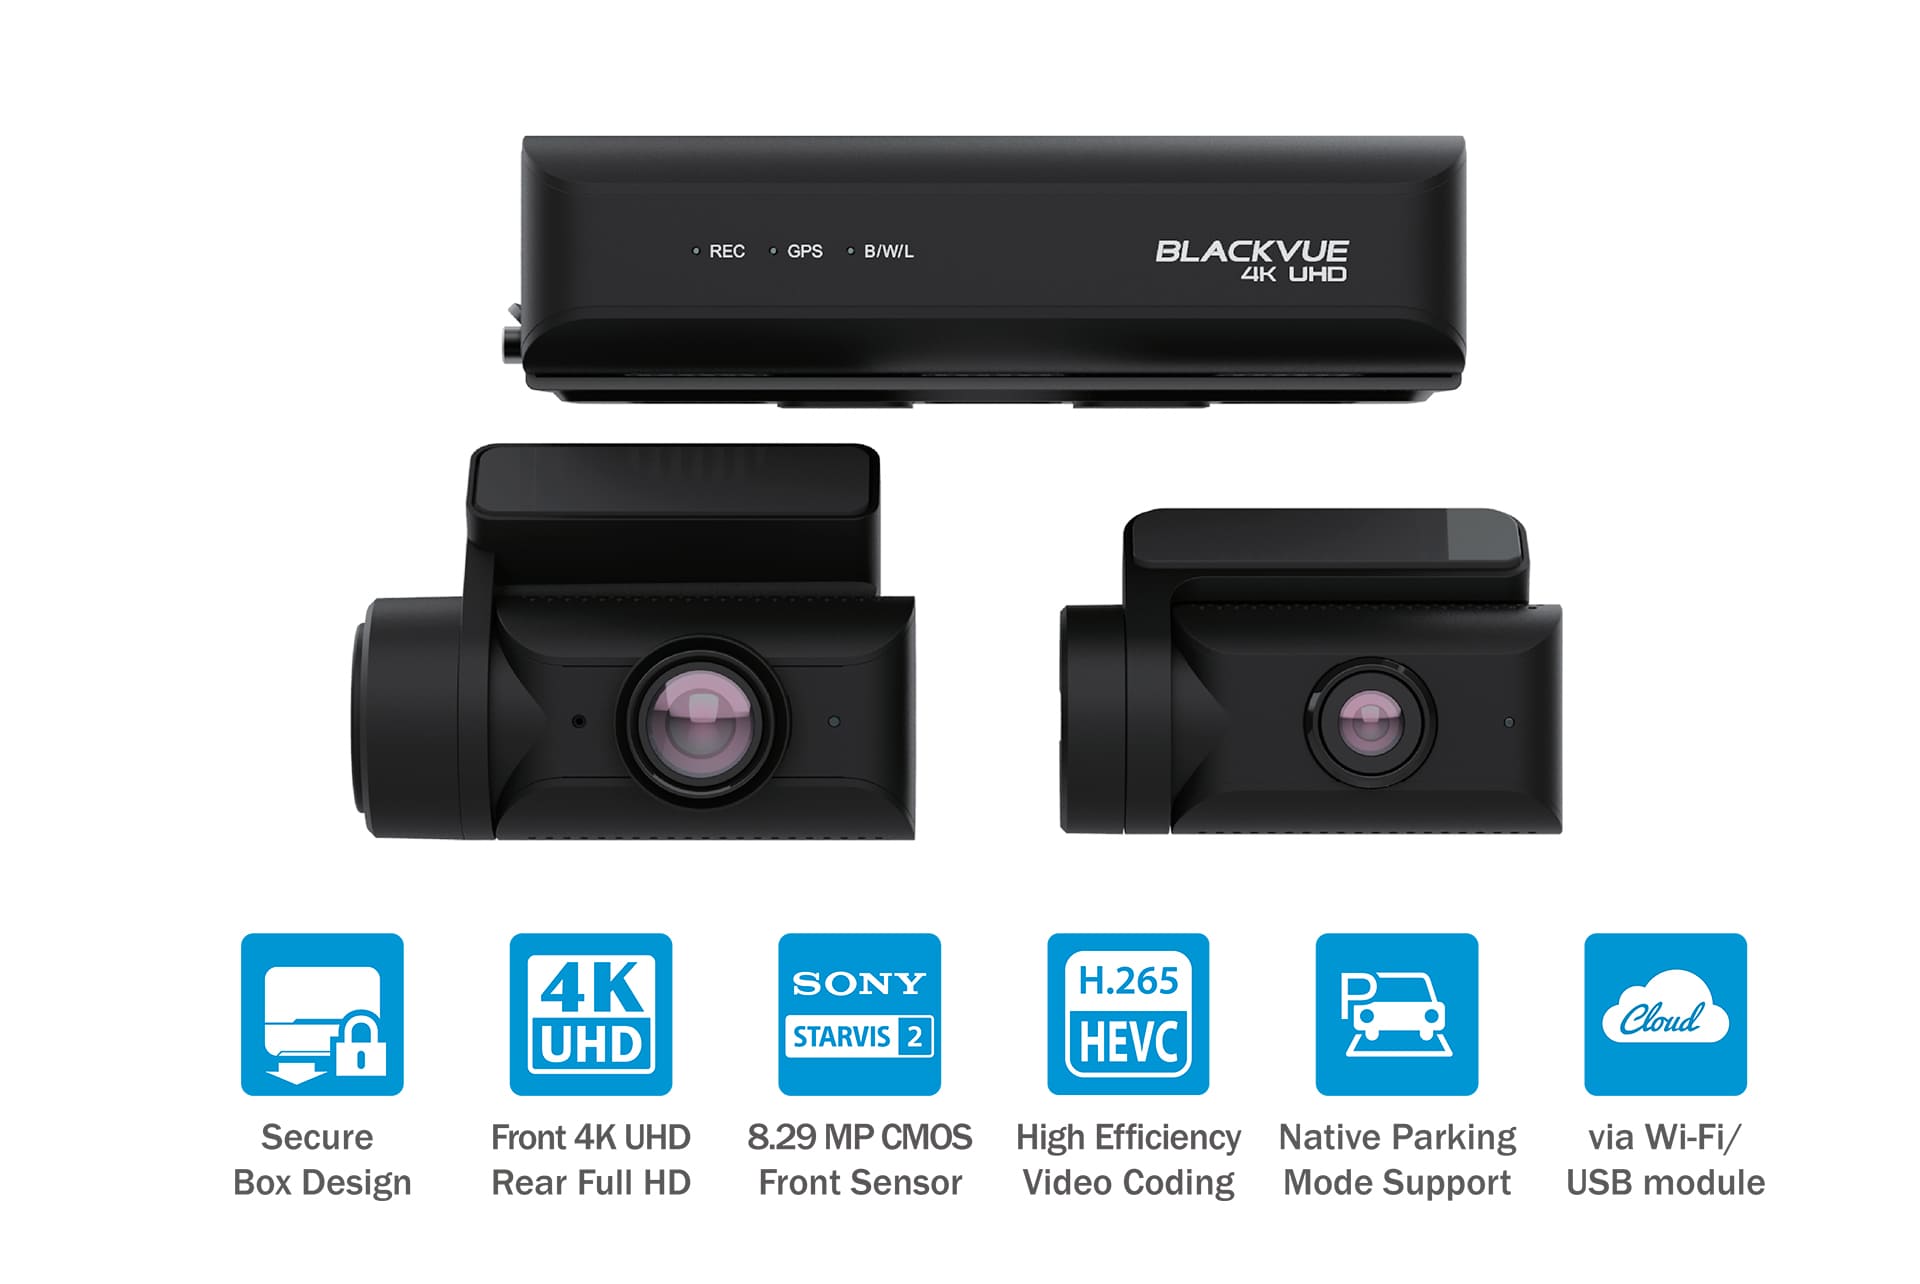 blackvue-d970x-box-plus-main-features-button-front-view